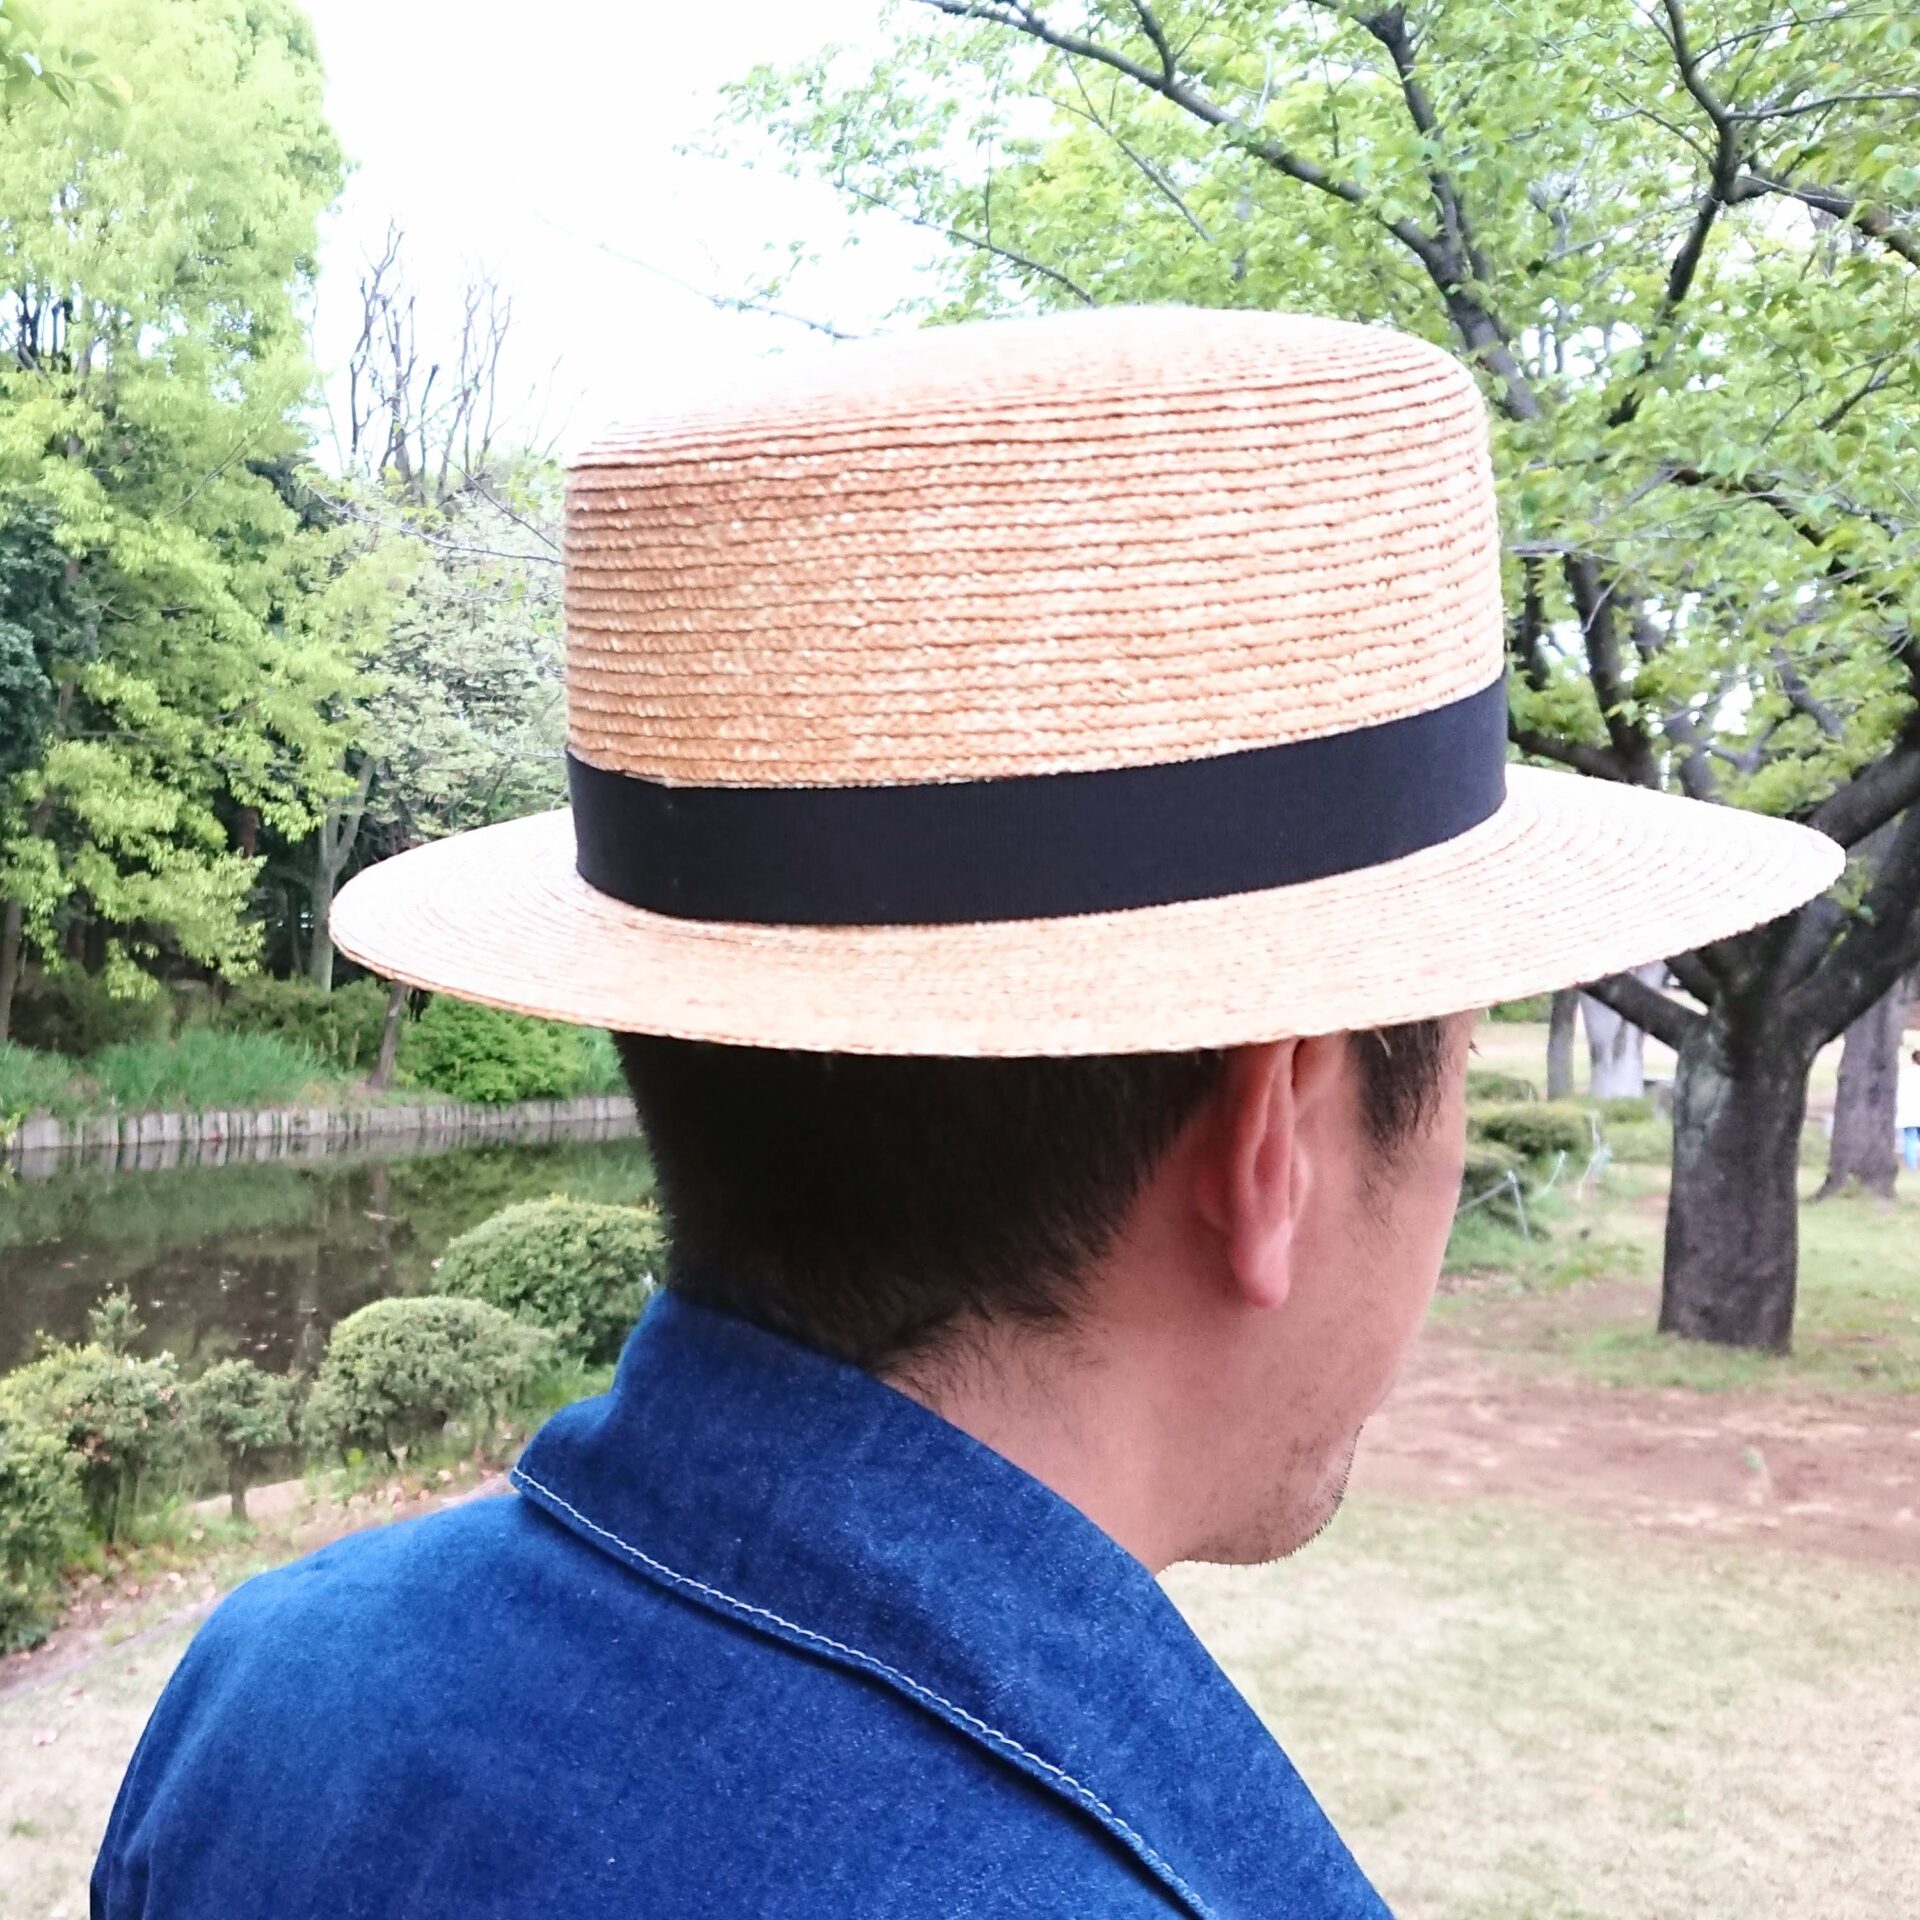 明治の頃の男性は、このカンカン帽をかぶることが外出時の正装だったことも。男子カンカン帽の復権望みます！